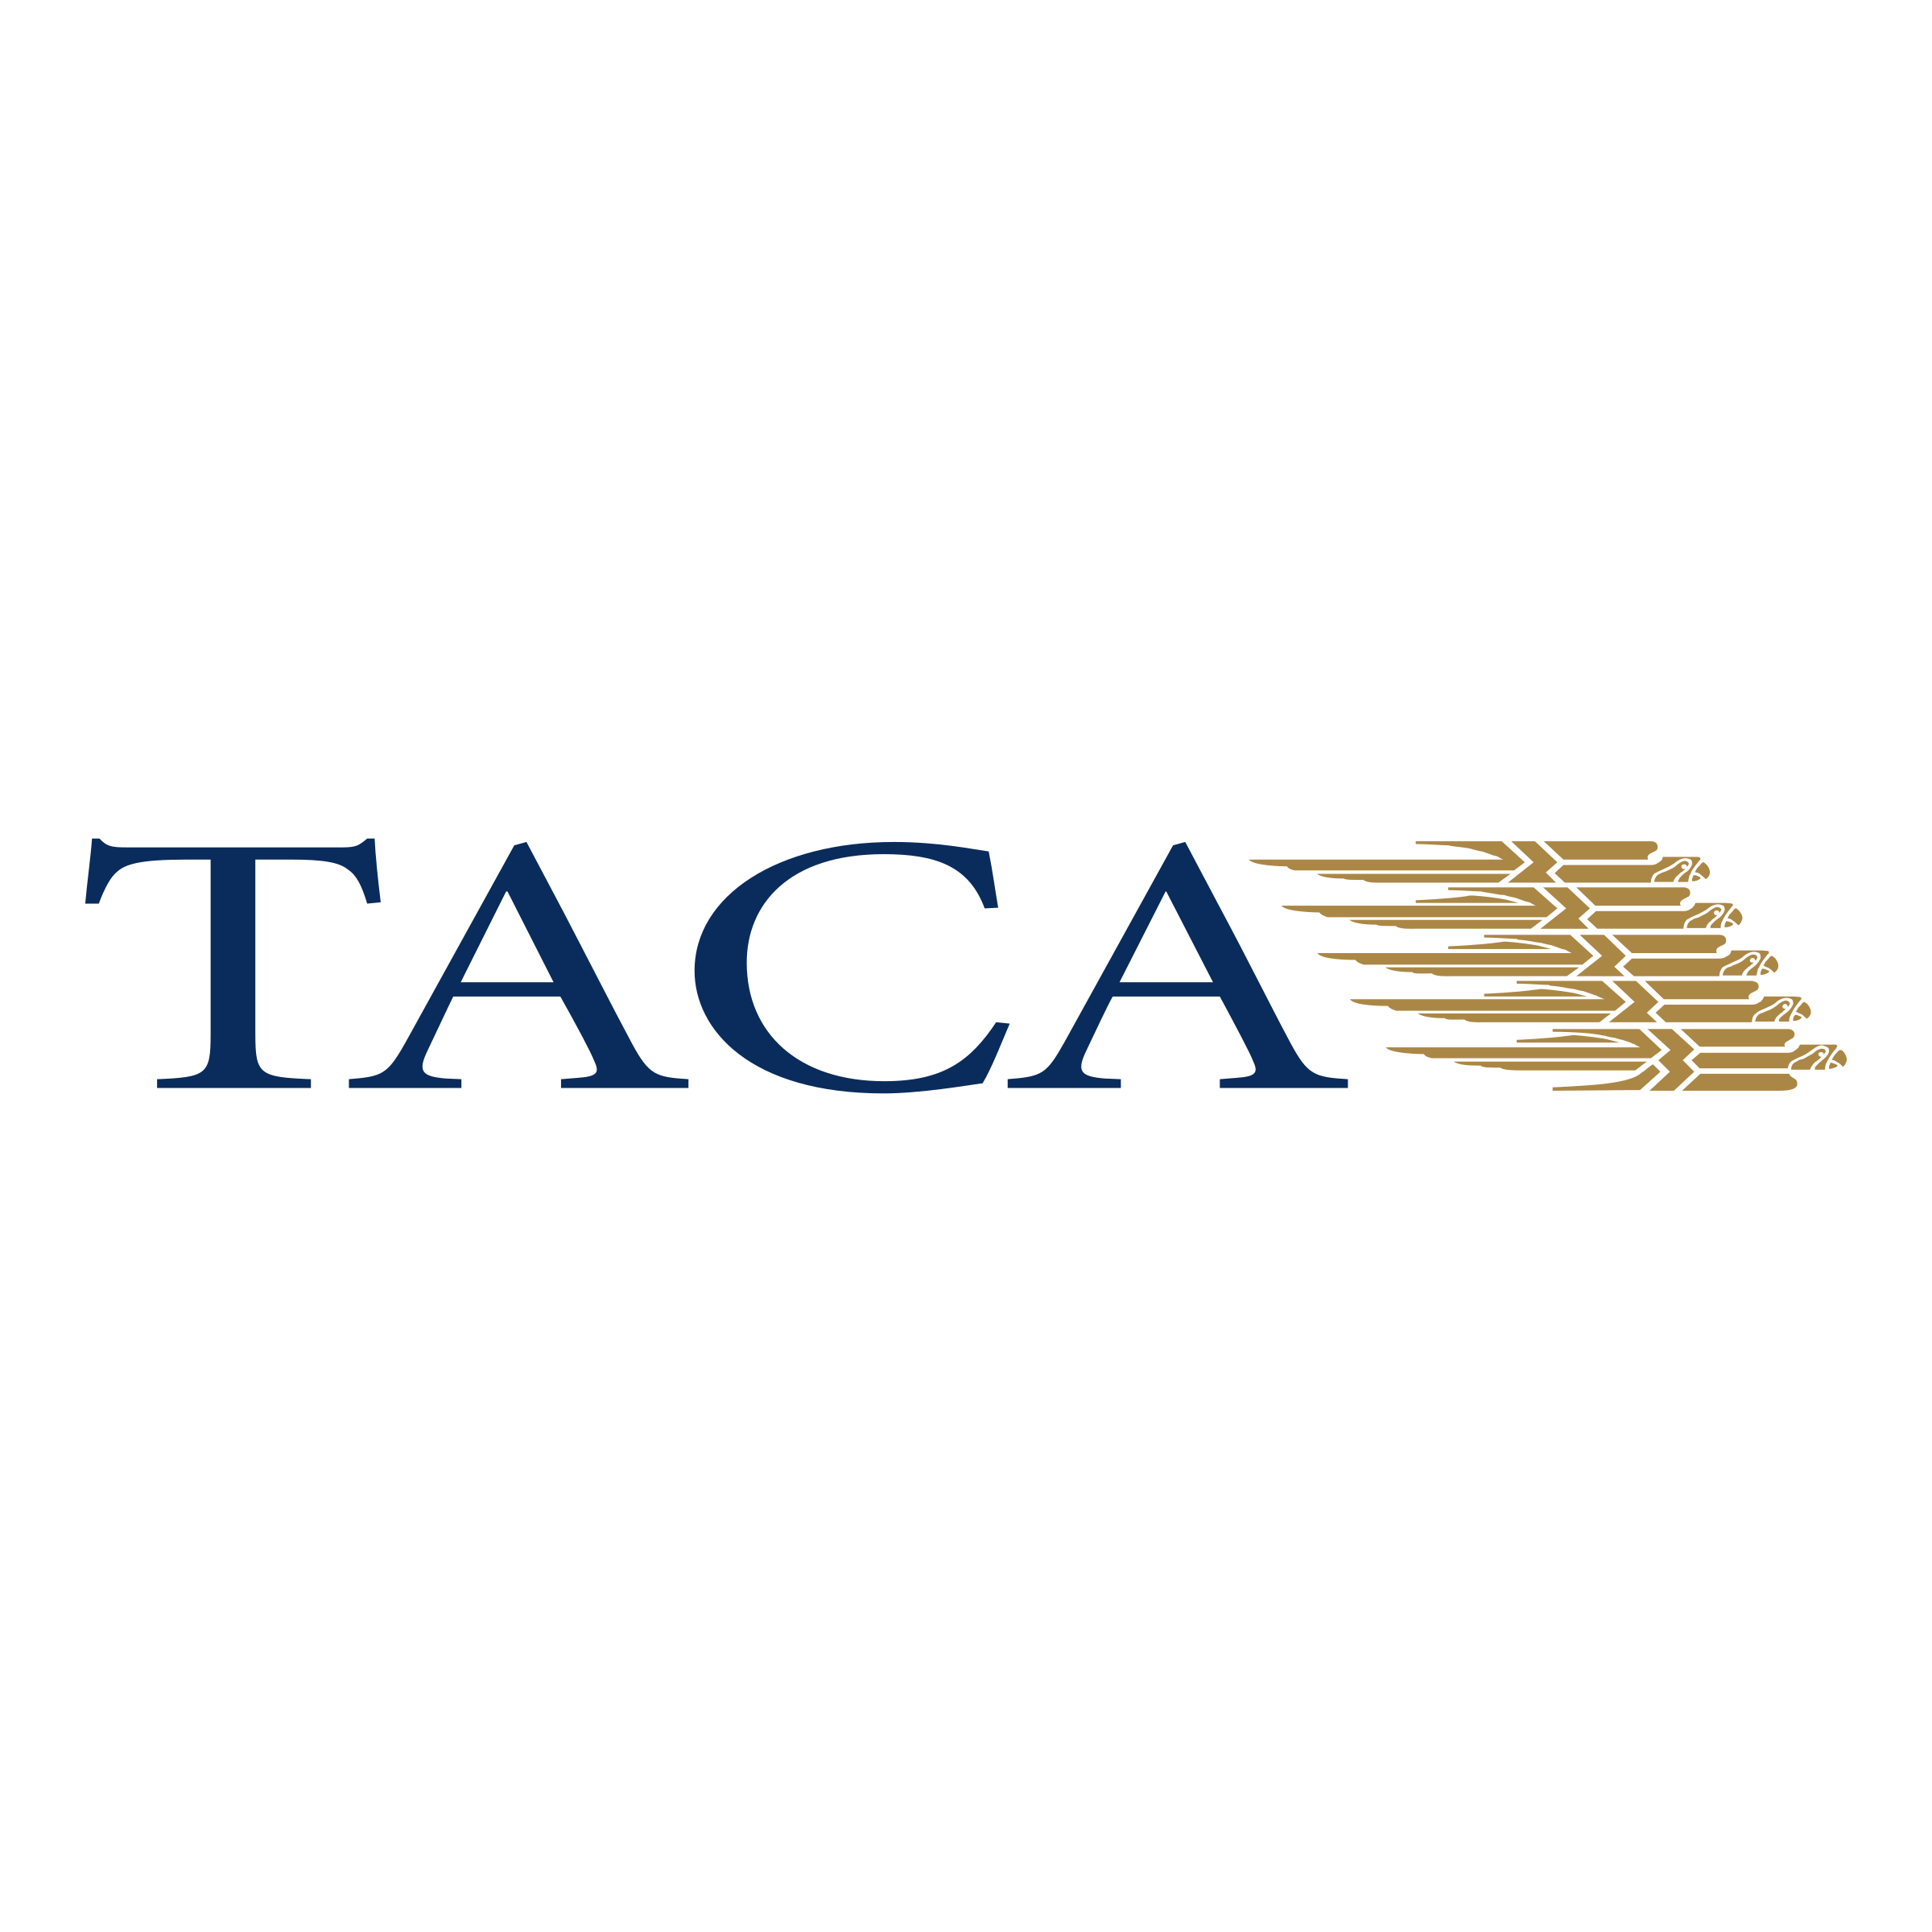 Taca Logo - TACA Logo PNG Transparent & SVG Vector